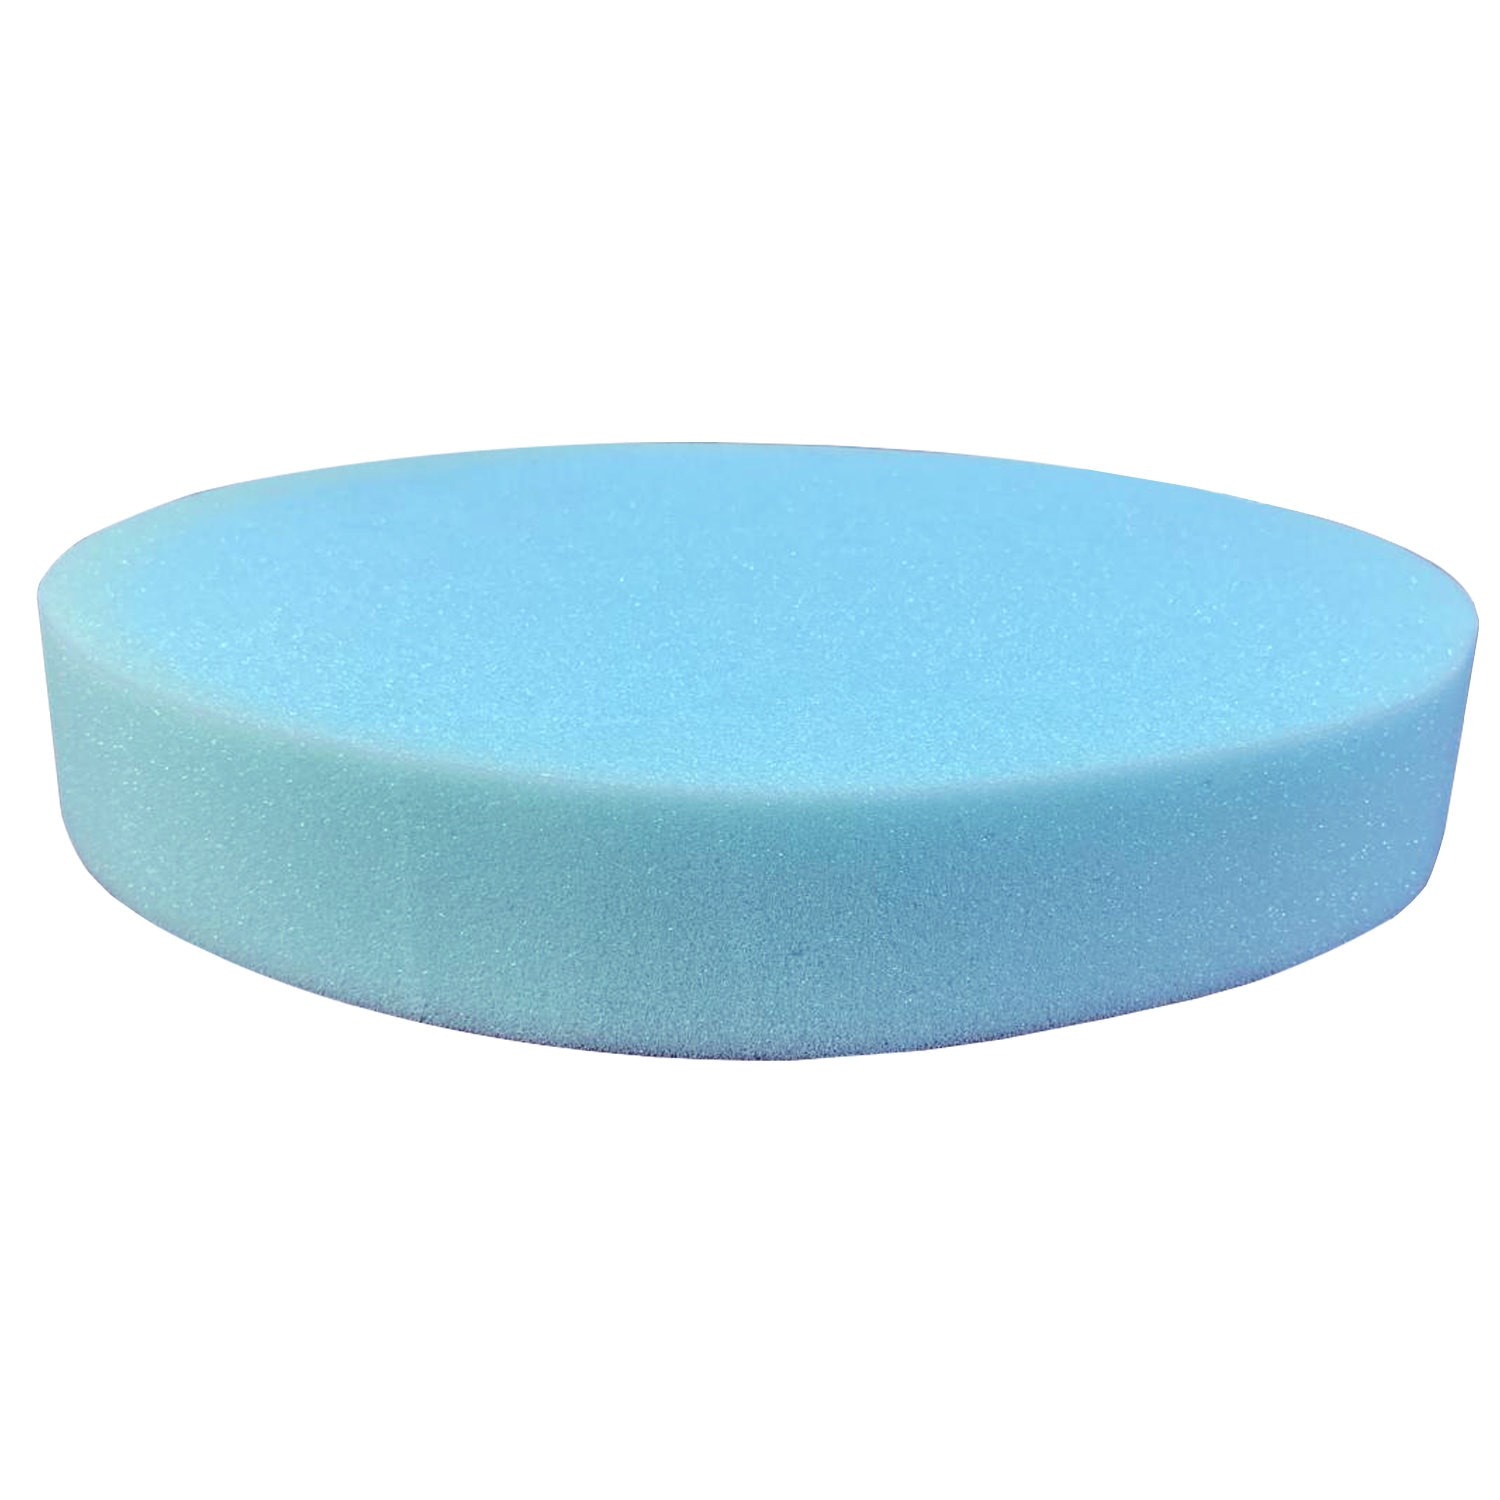 Oval Foam Disc 8 9 Cm 3 3.54 by 4.5cm 1.75, Styrofoam Super Soft Elliptical  Shaped Discs in Sets of Ten, Styrofoam Oval Discs 